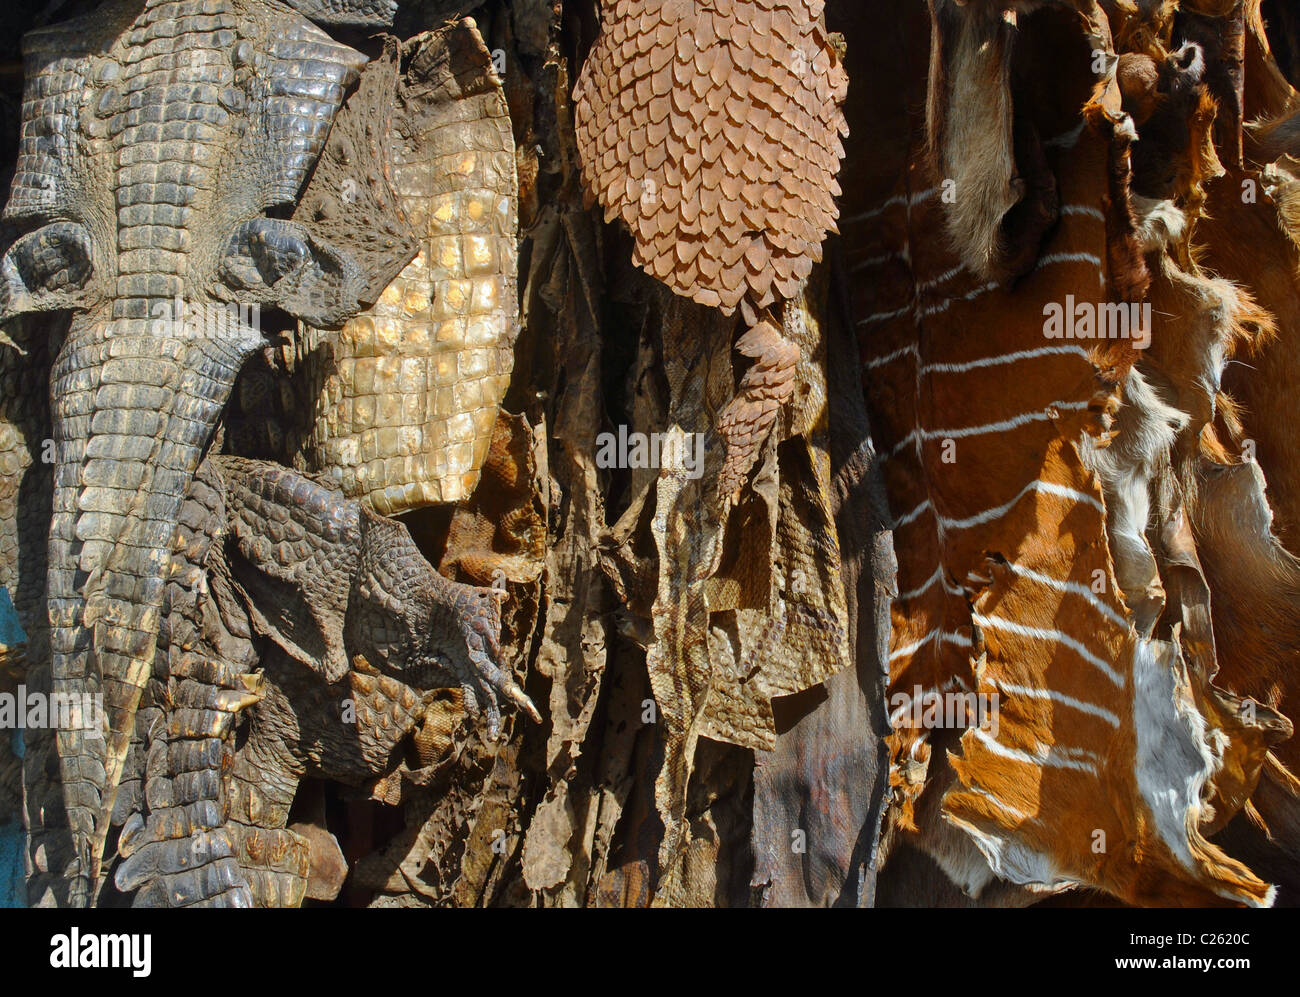 Animal skins in Ivory Coast Stock Photo